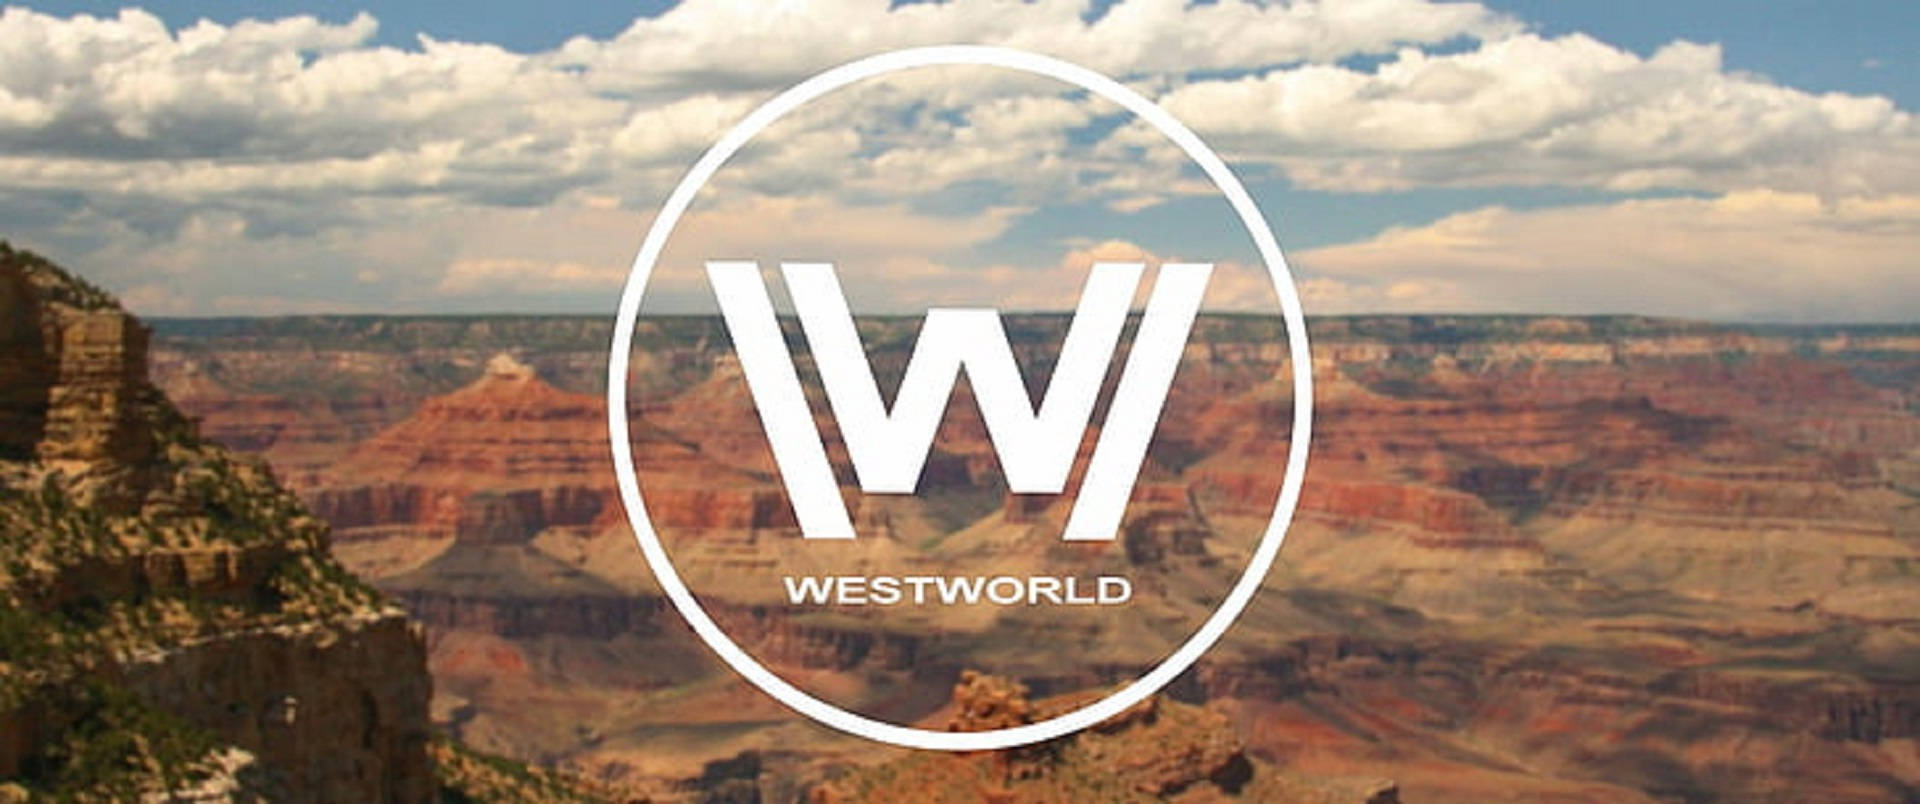 Logode Westworld En Un Acantilado De Montaña. Fondo de pantalla